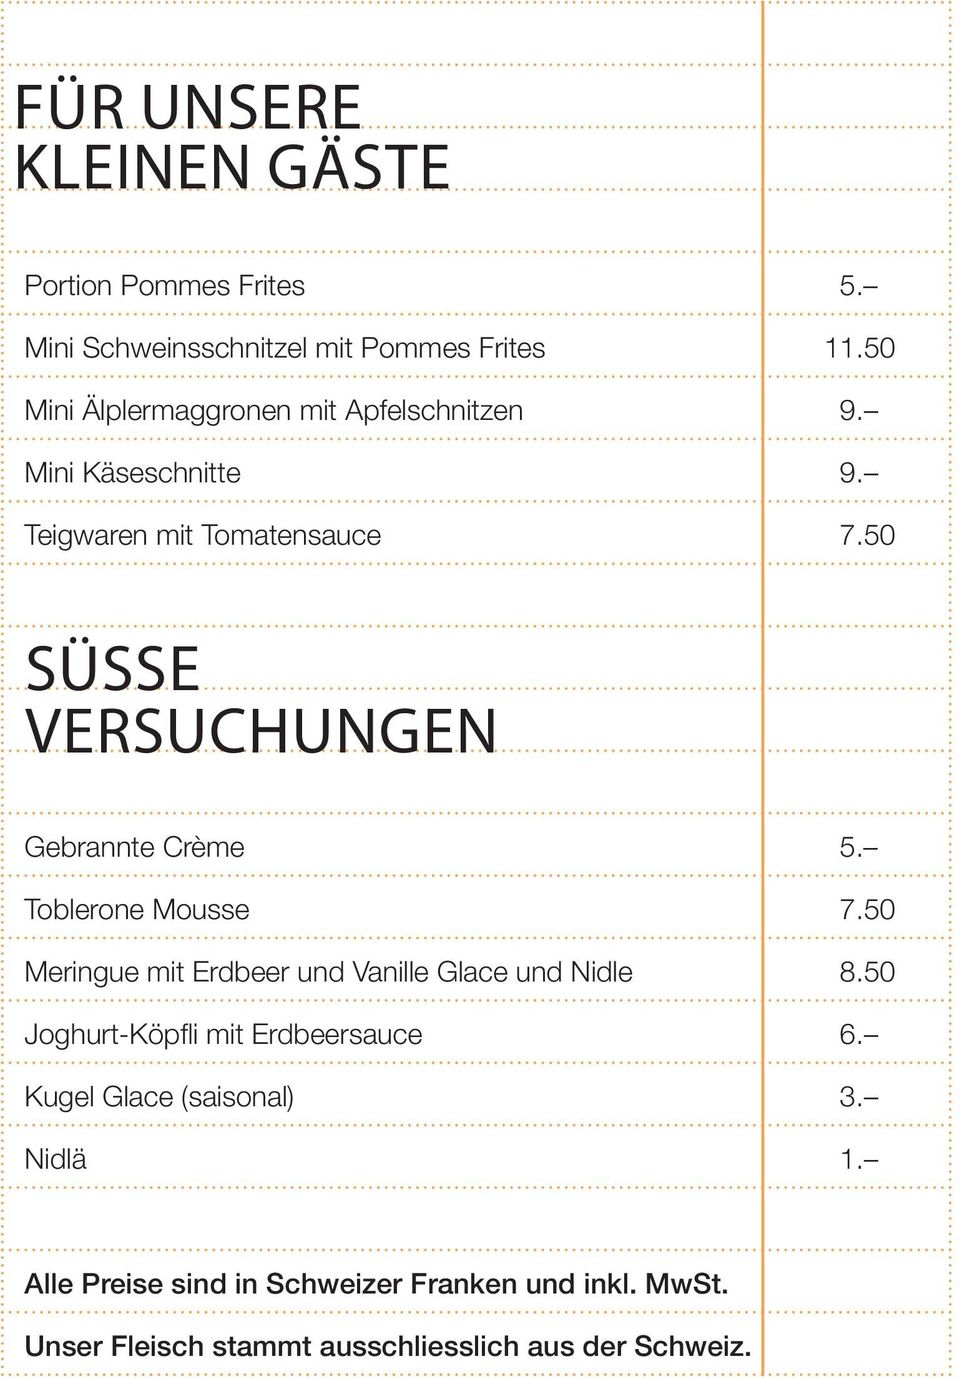 50 Süsse Versuchungen Gebrannte Crème 5. Toblerone Mousse 7.50 Meringue mit Erdbeer und Vanille Glace und Nidle 8.